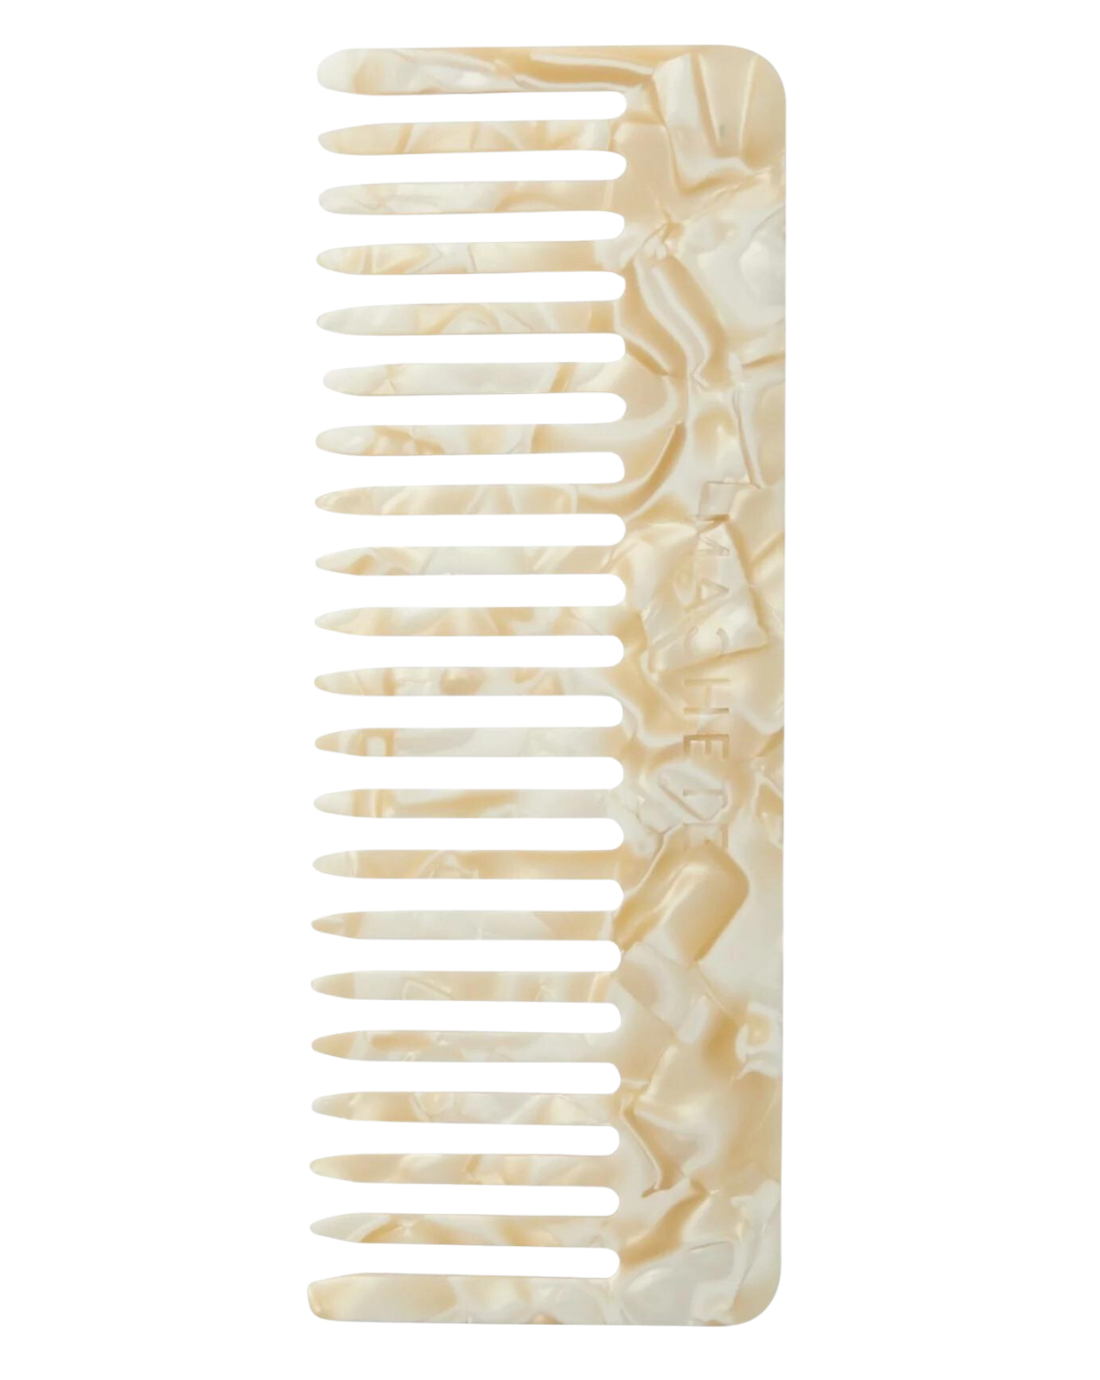 Machete No. 2 Comb